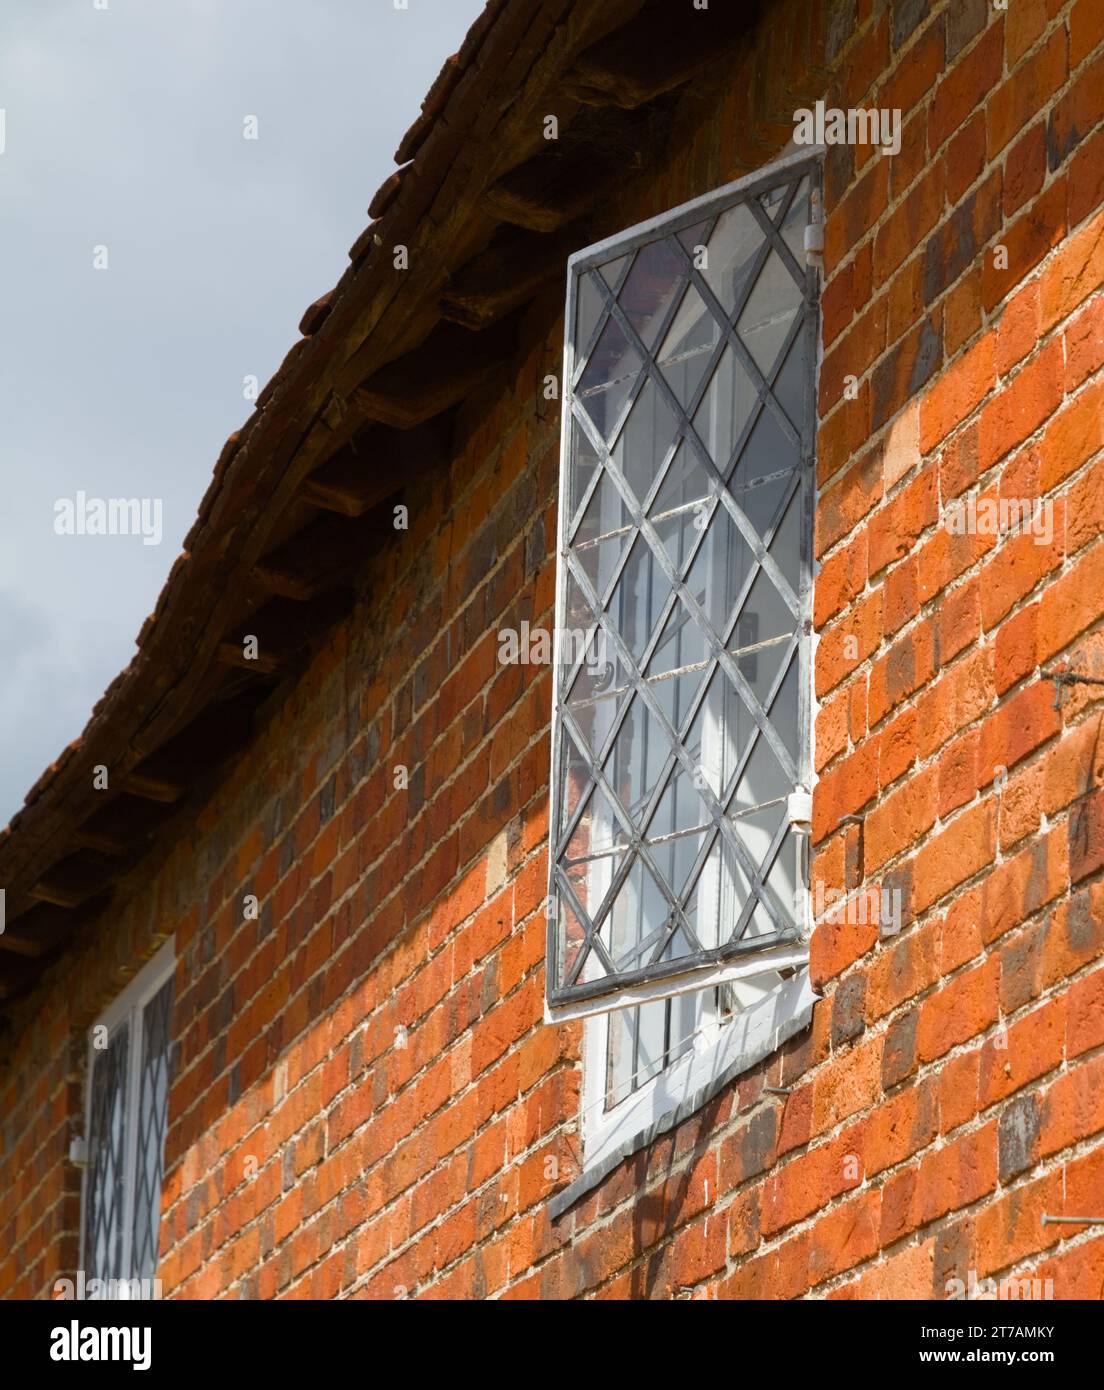 Fenêtre ouverte au plomb dans Un cottage dans le village de construction navale historique de Bucklers Hard, Beaulieu, Royaume-Uni Banque D'Images